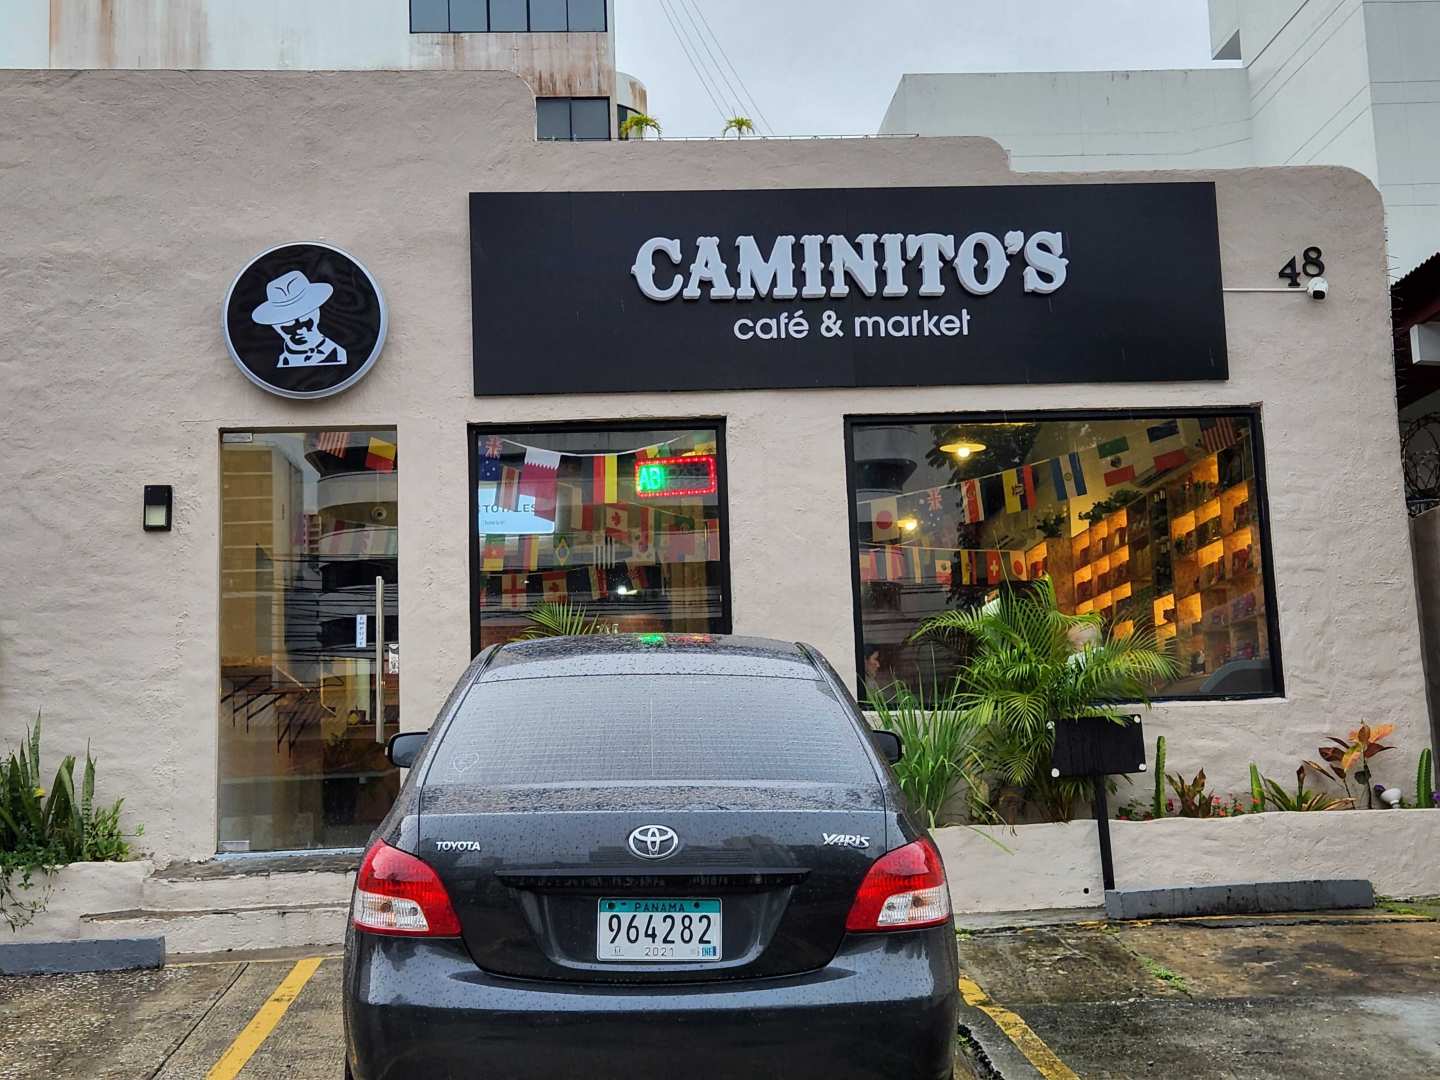 Caminito's Café y Market